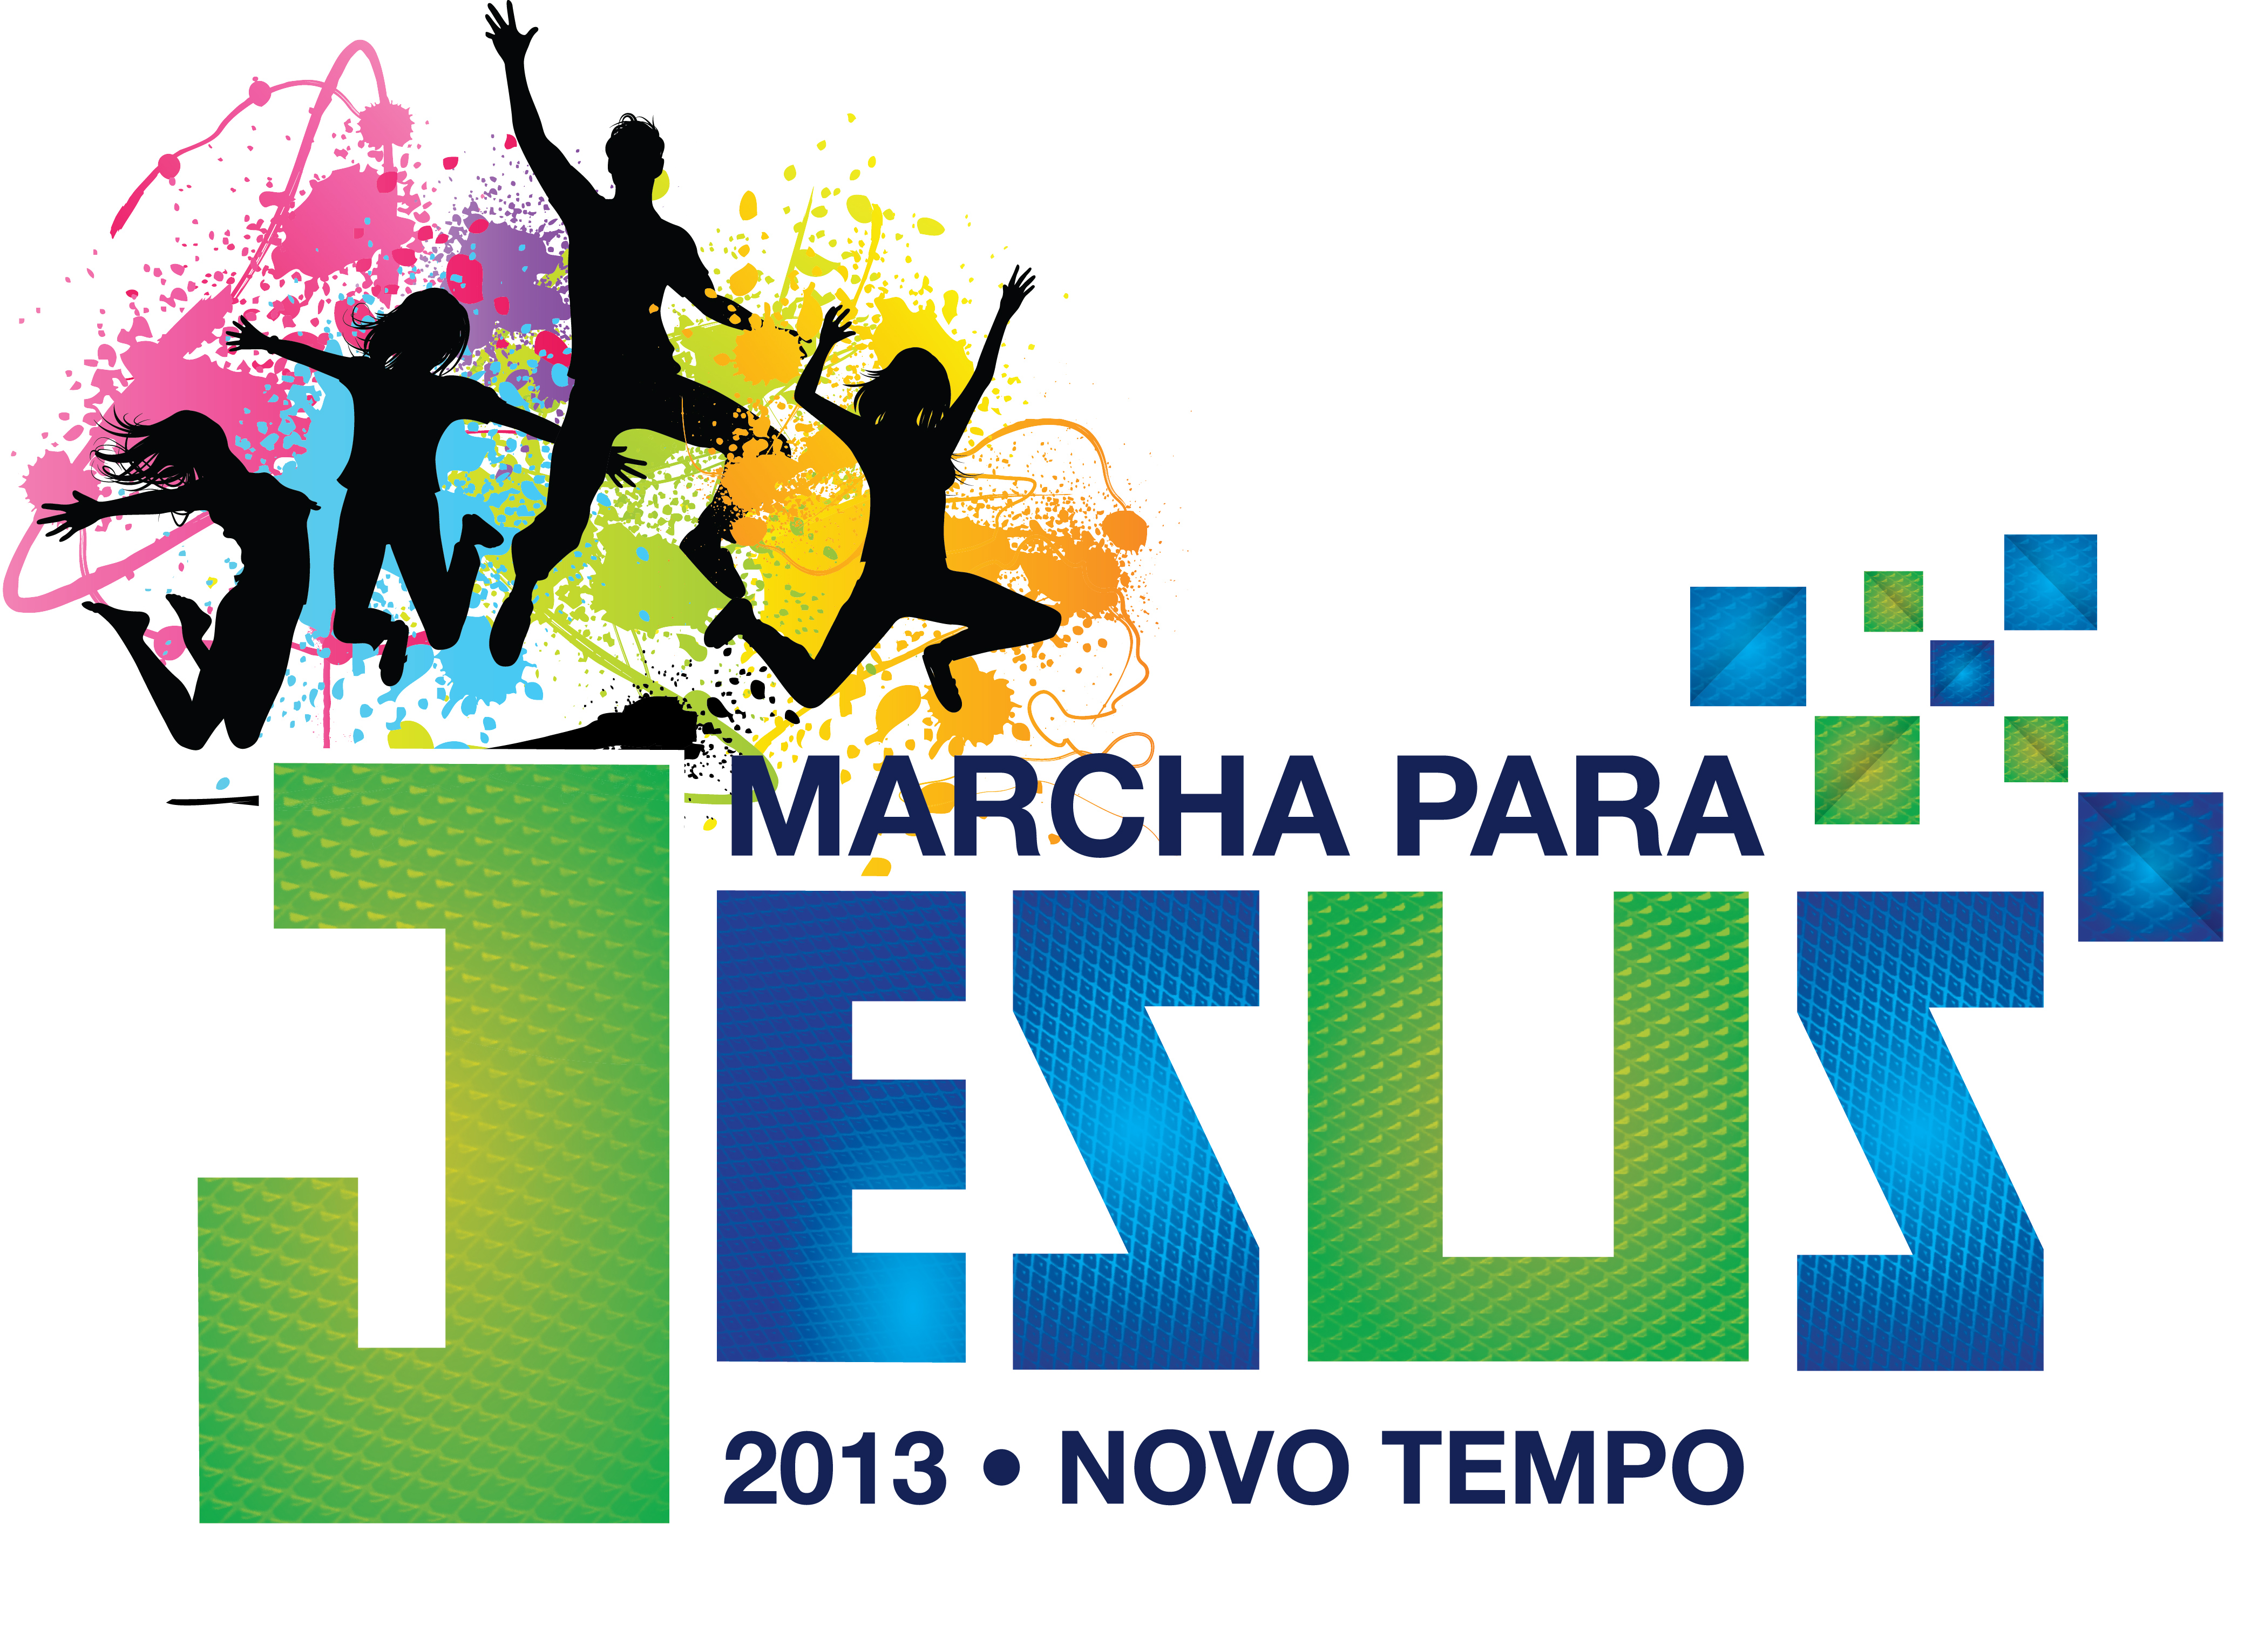 http://noticias.gospelmais.com.br/files/2013/04/Marcha-para-Jesus-2013.jpg